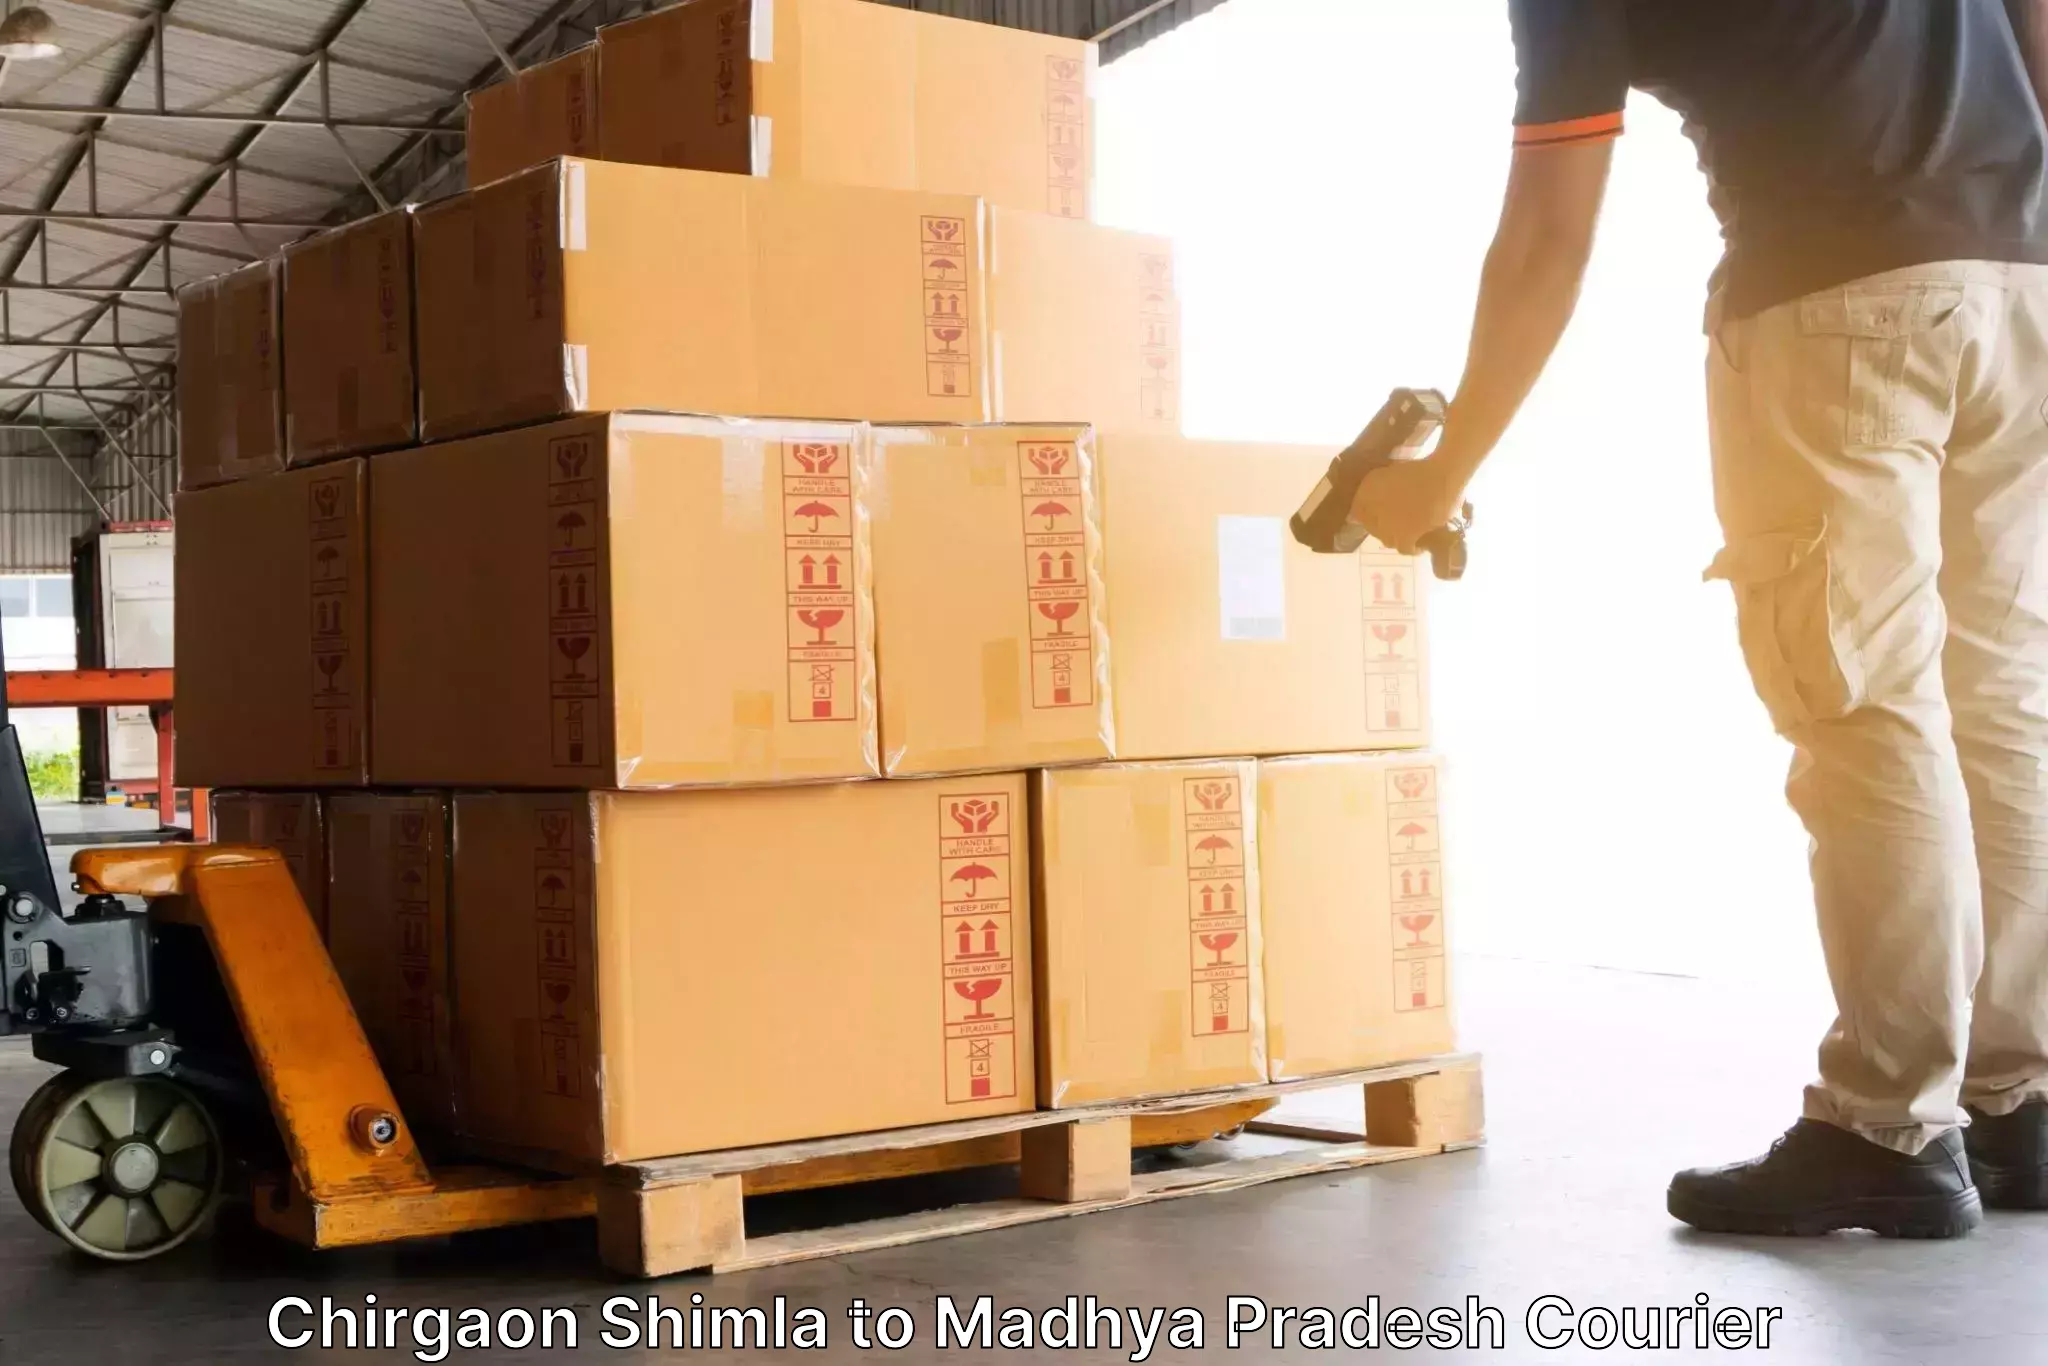 Fast shipping solutions Chirgaon Shimla to Vijayraghavgarh